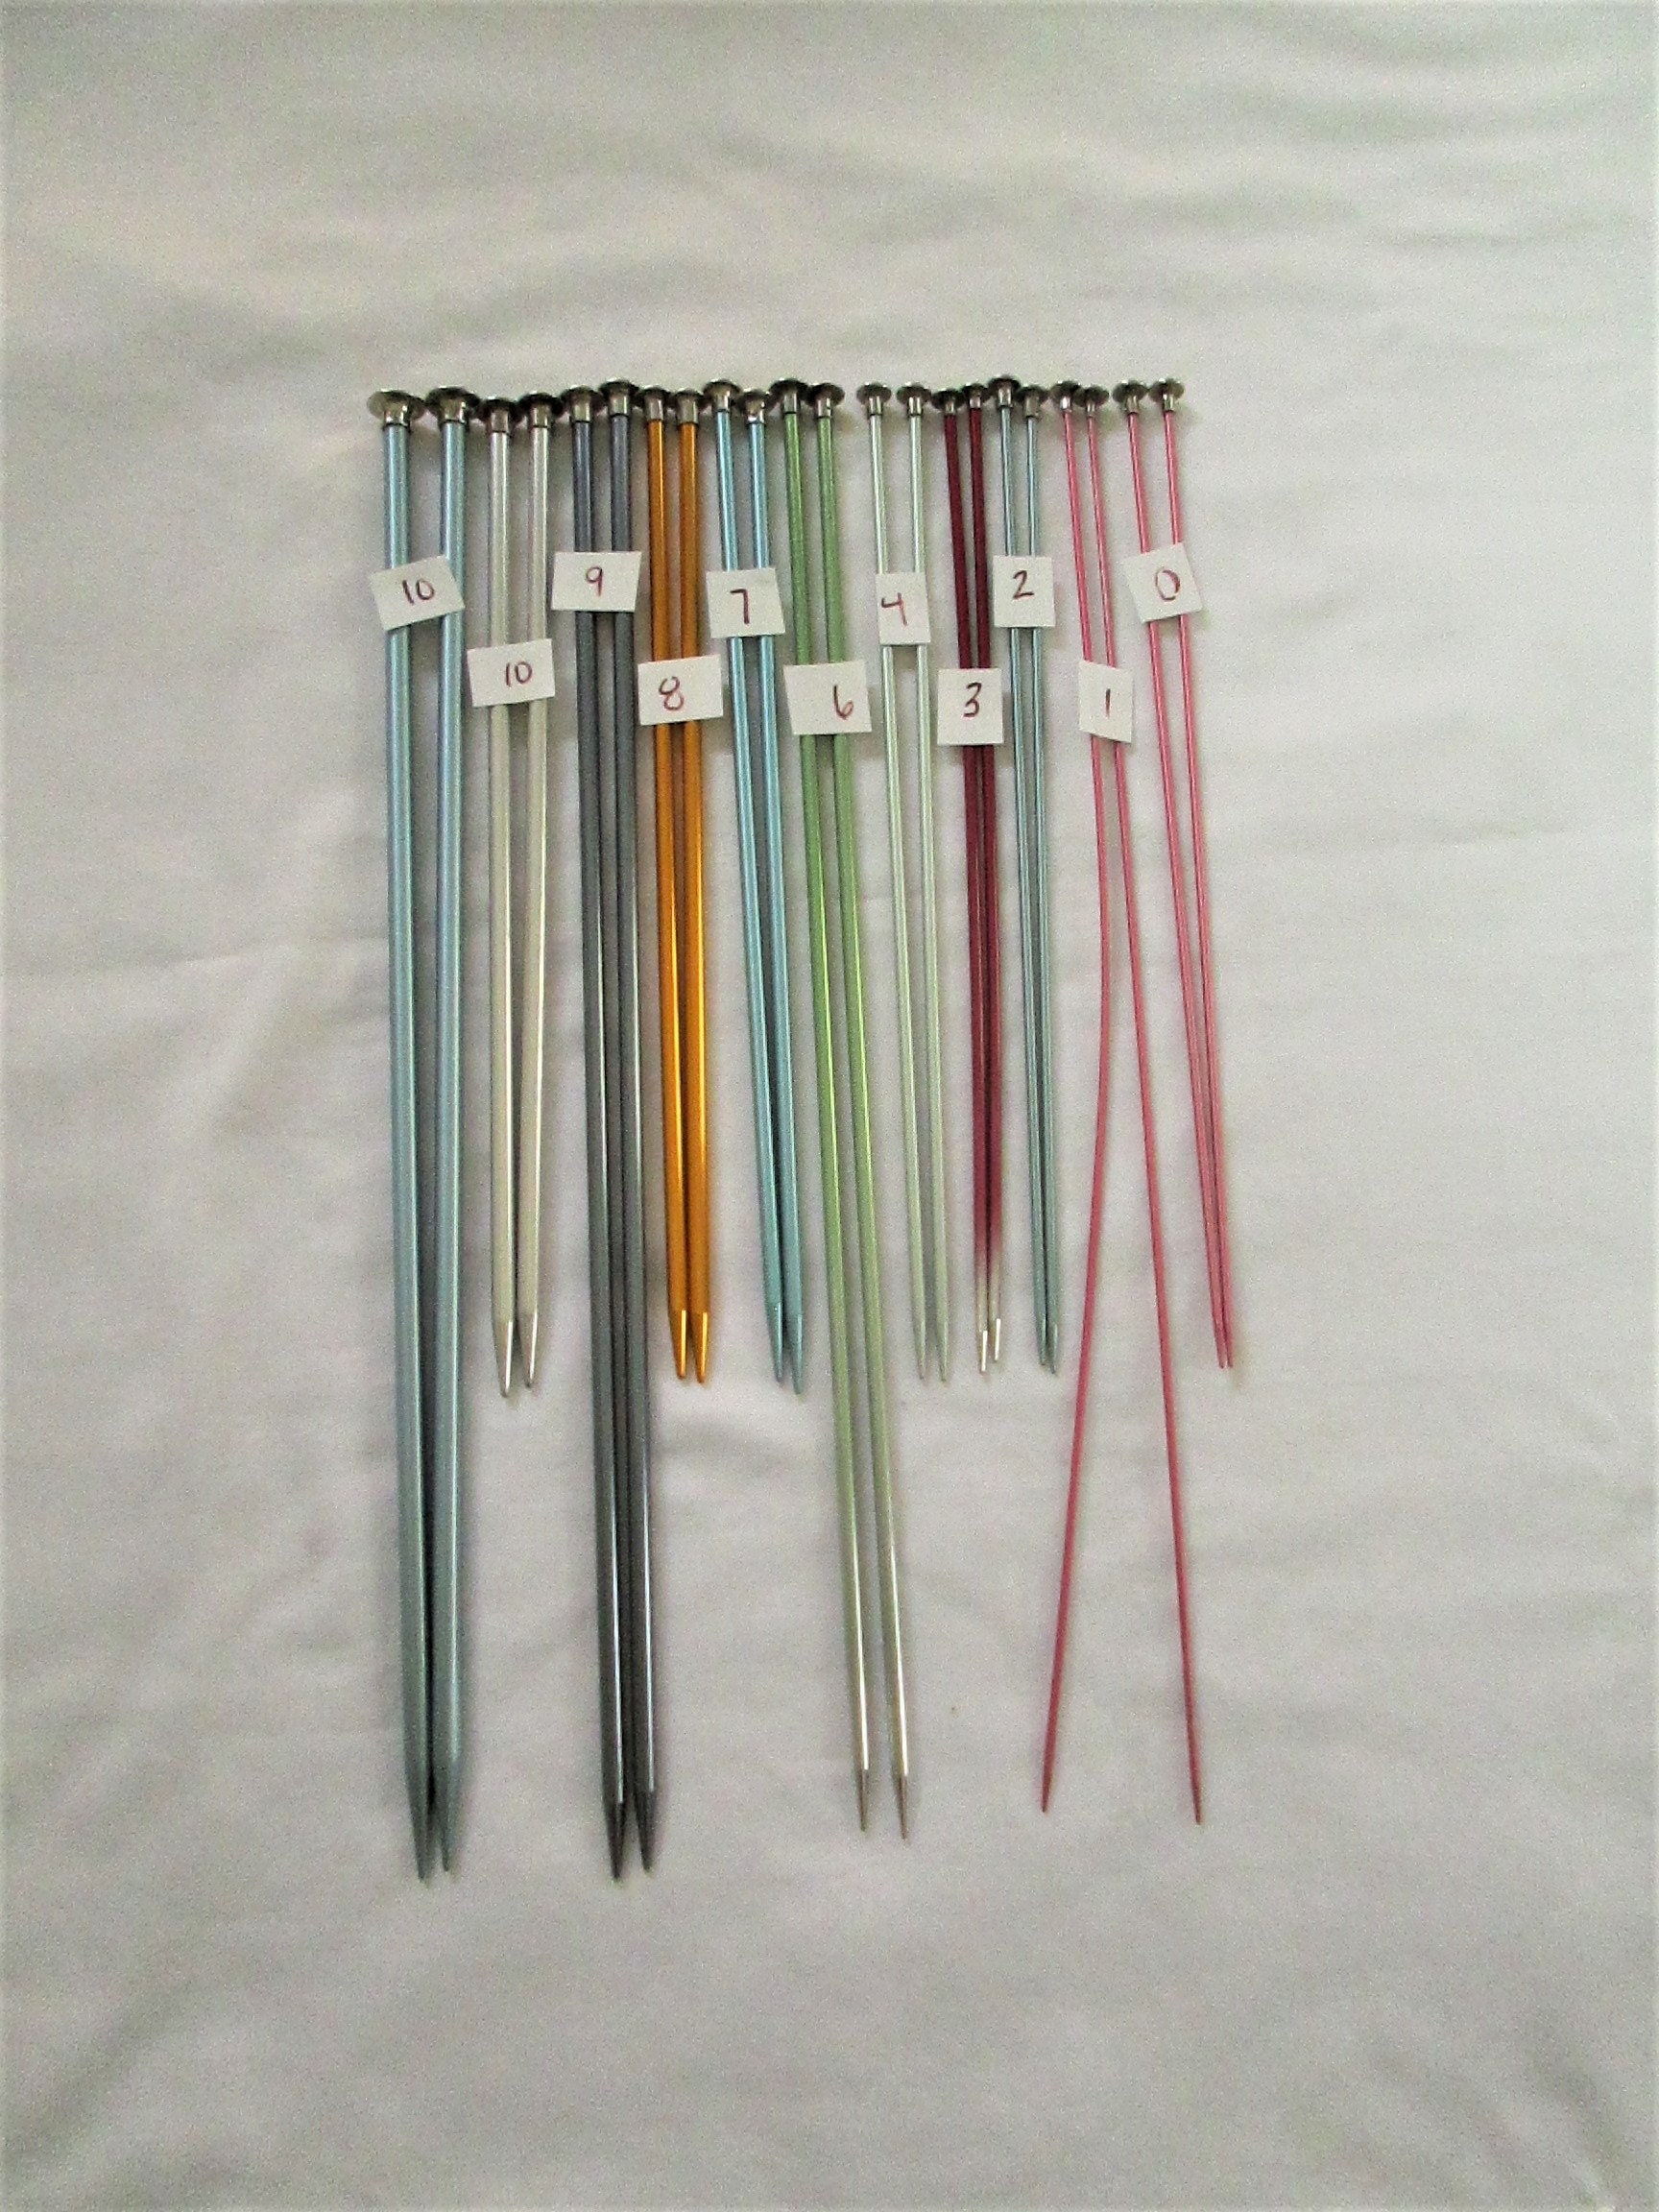 Vintage Knitting Needles, Boye, Susan Bates, Metal, Plastic